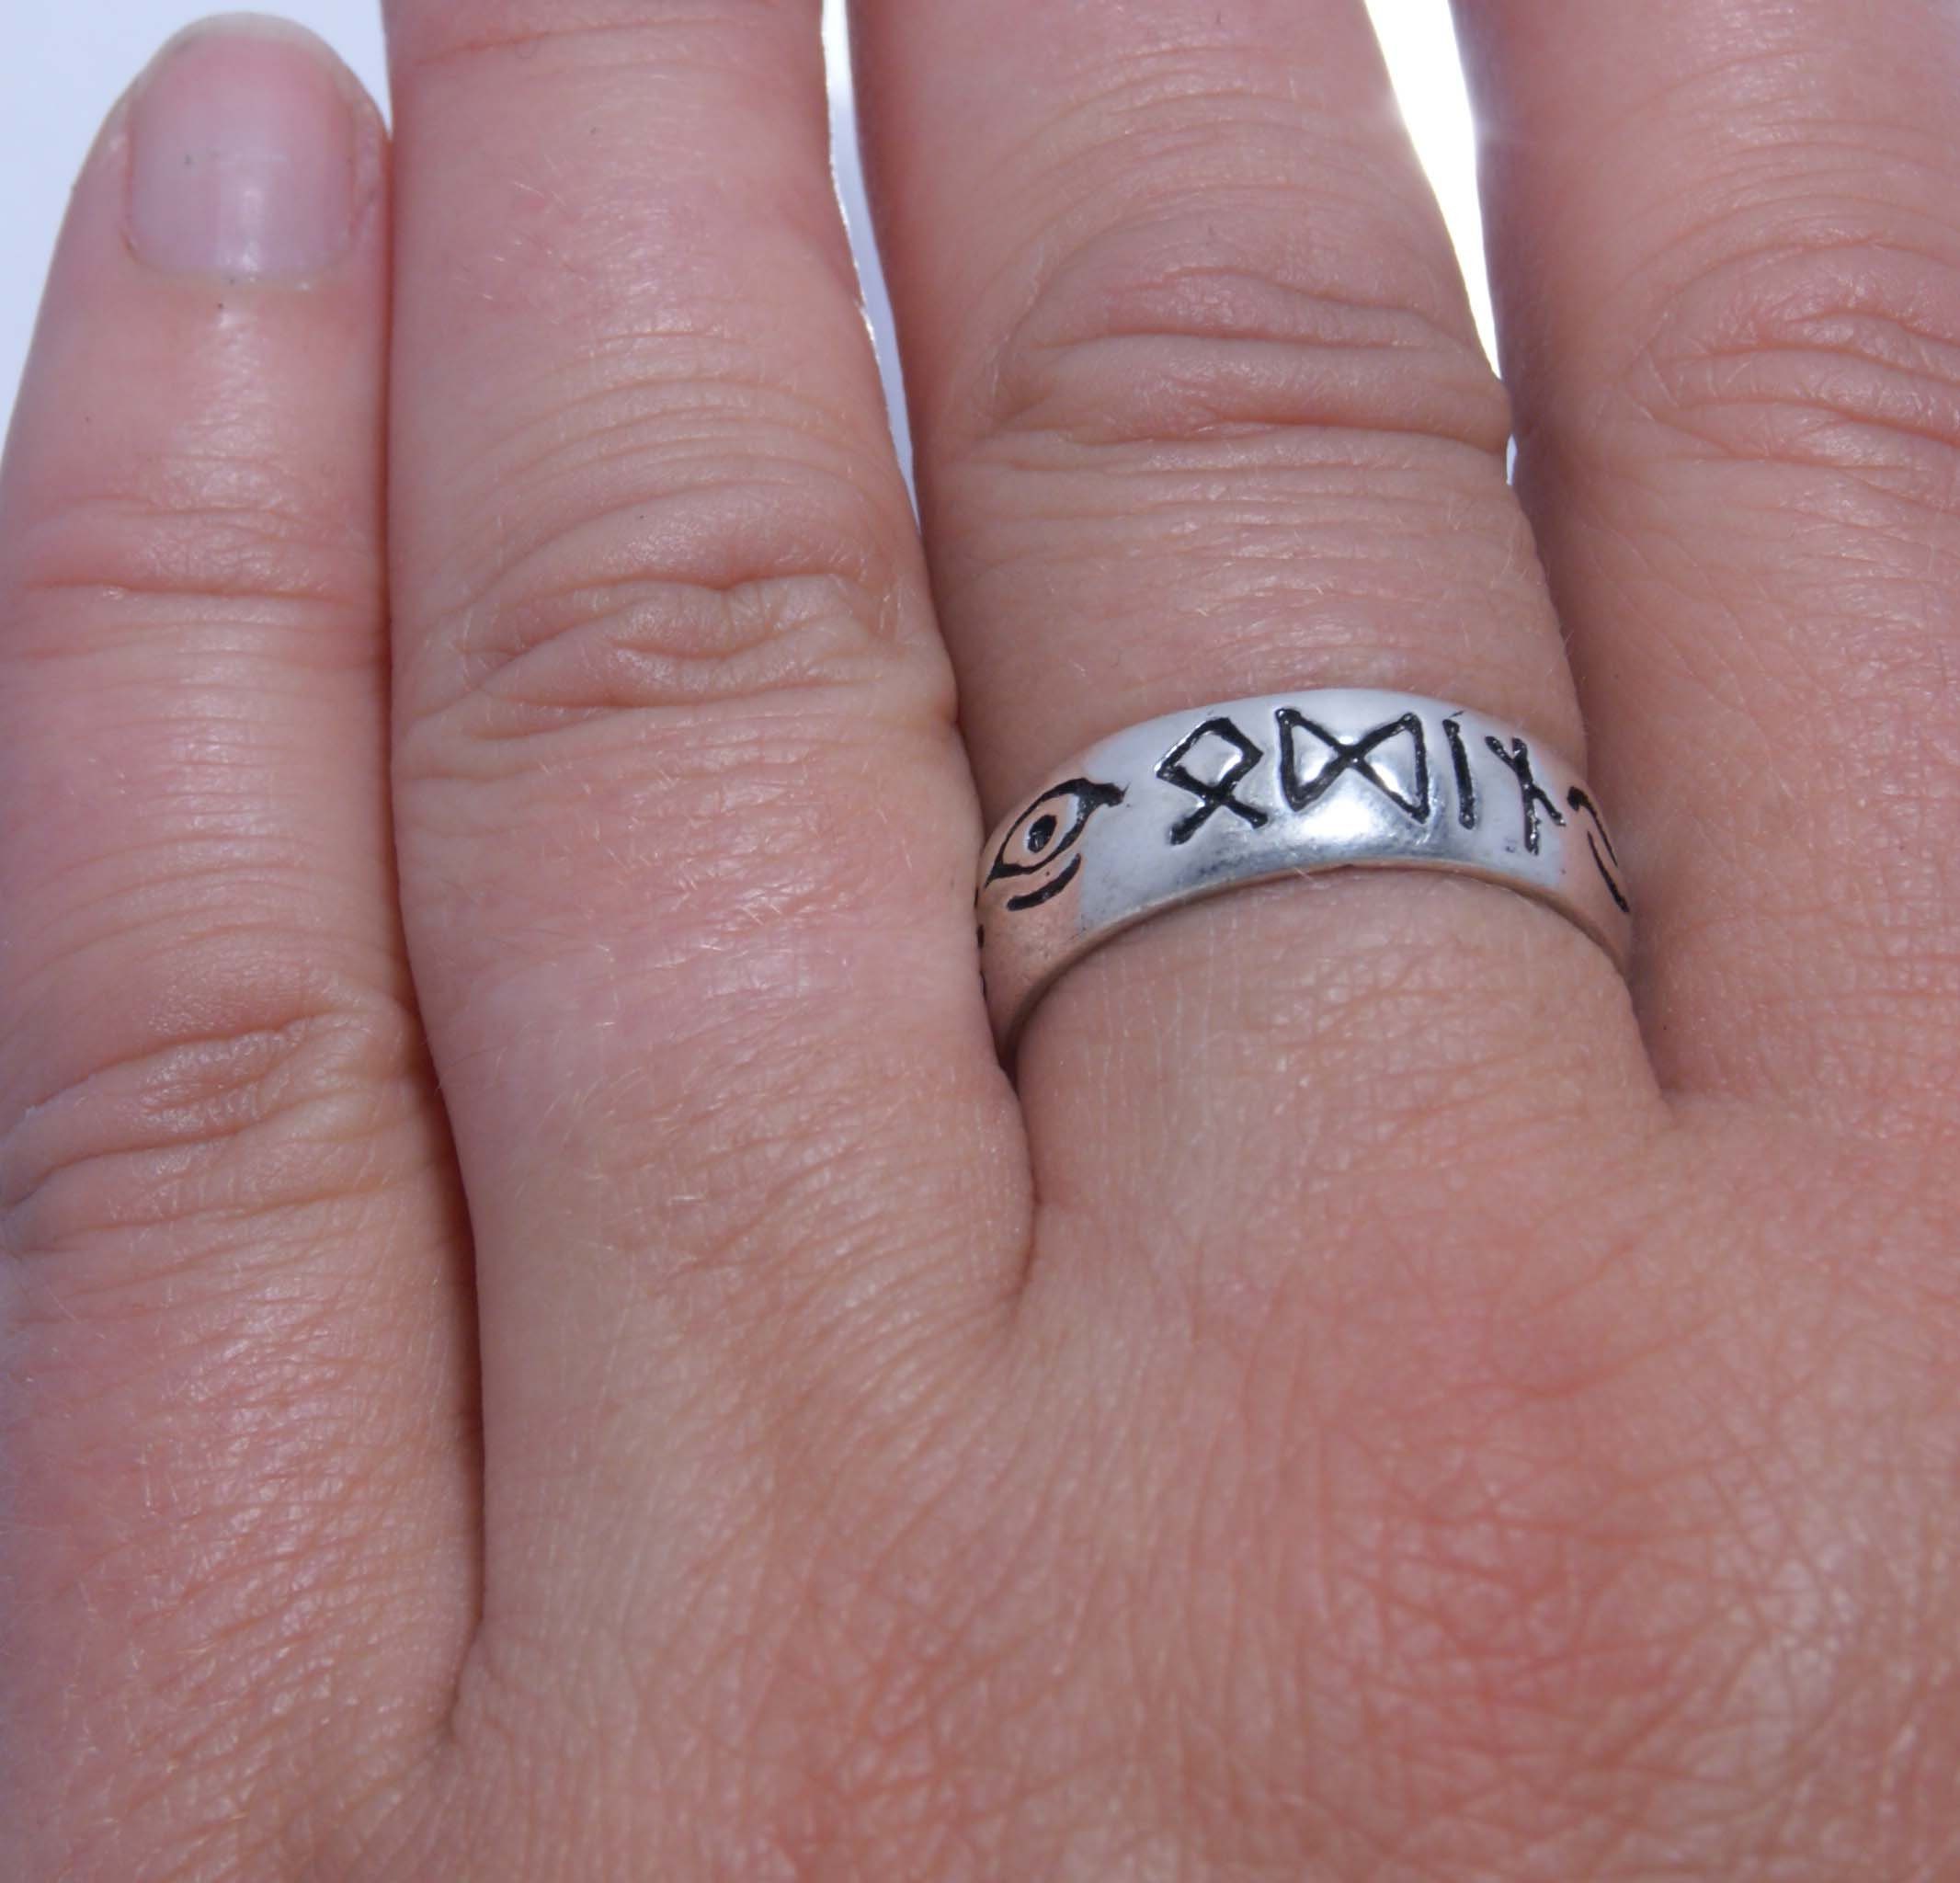 Auge Ring 52-76 of Gott Fingerring Gr. Silberring Leather Odin, Sonne Kiss Runen